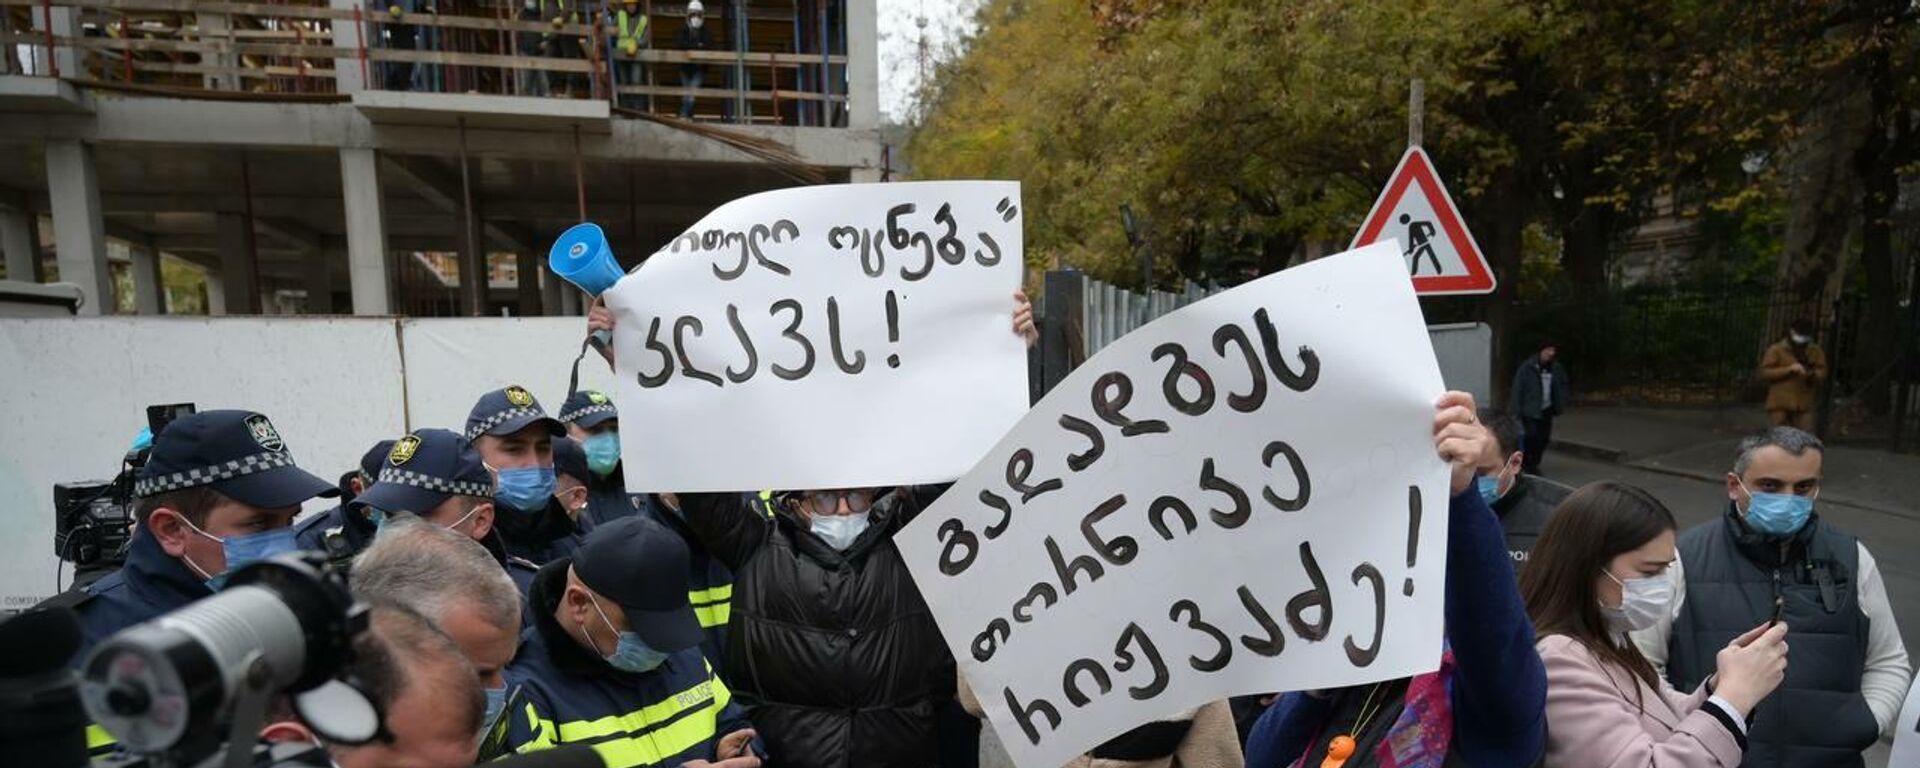 Акция протеста активистов партии Дроа у офиса Грузинской мечты 25 ноября 2021 года - Sputnik Грузия, 1920, 25.11.2021